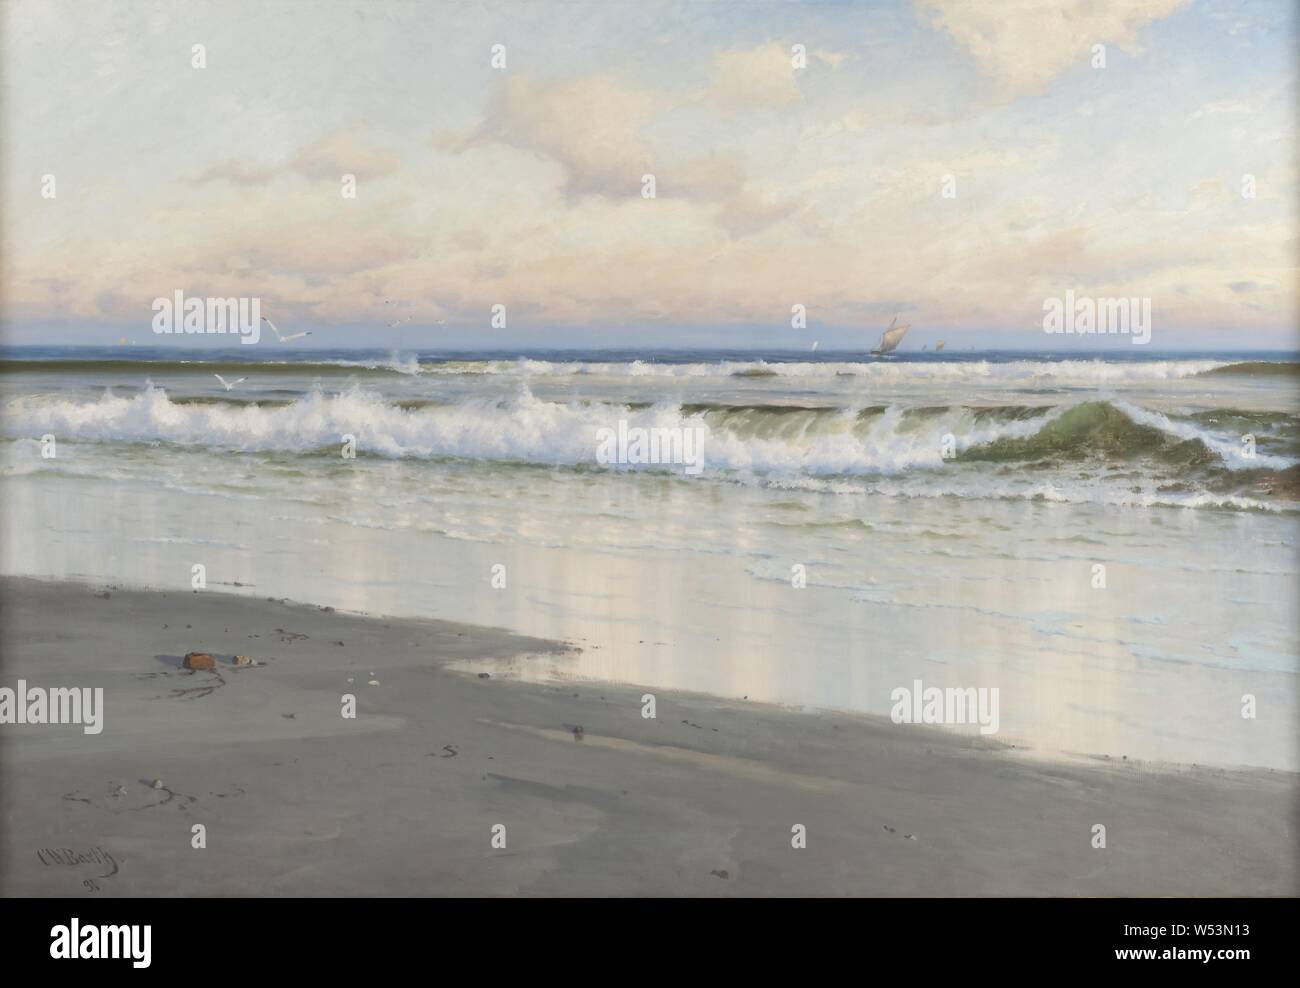 Carl Wilhelm Bøckmann Baarth, la spiaggia a Filey nello Yorkshire, Inghilterra, spiaggia a Filey nella contea di York, pittura, 1891, olio su tela, altezza 116 cm (45,6 pollici), larghezza 170 cm (66,9, pollici), firmato, CW Barth, 91 Foto Stock